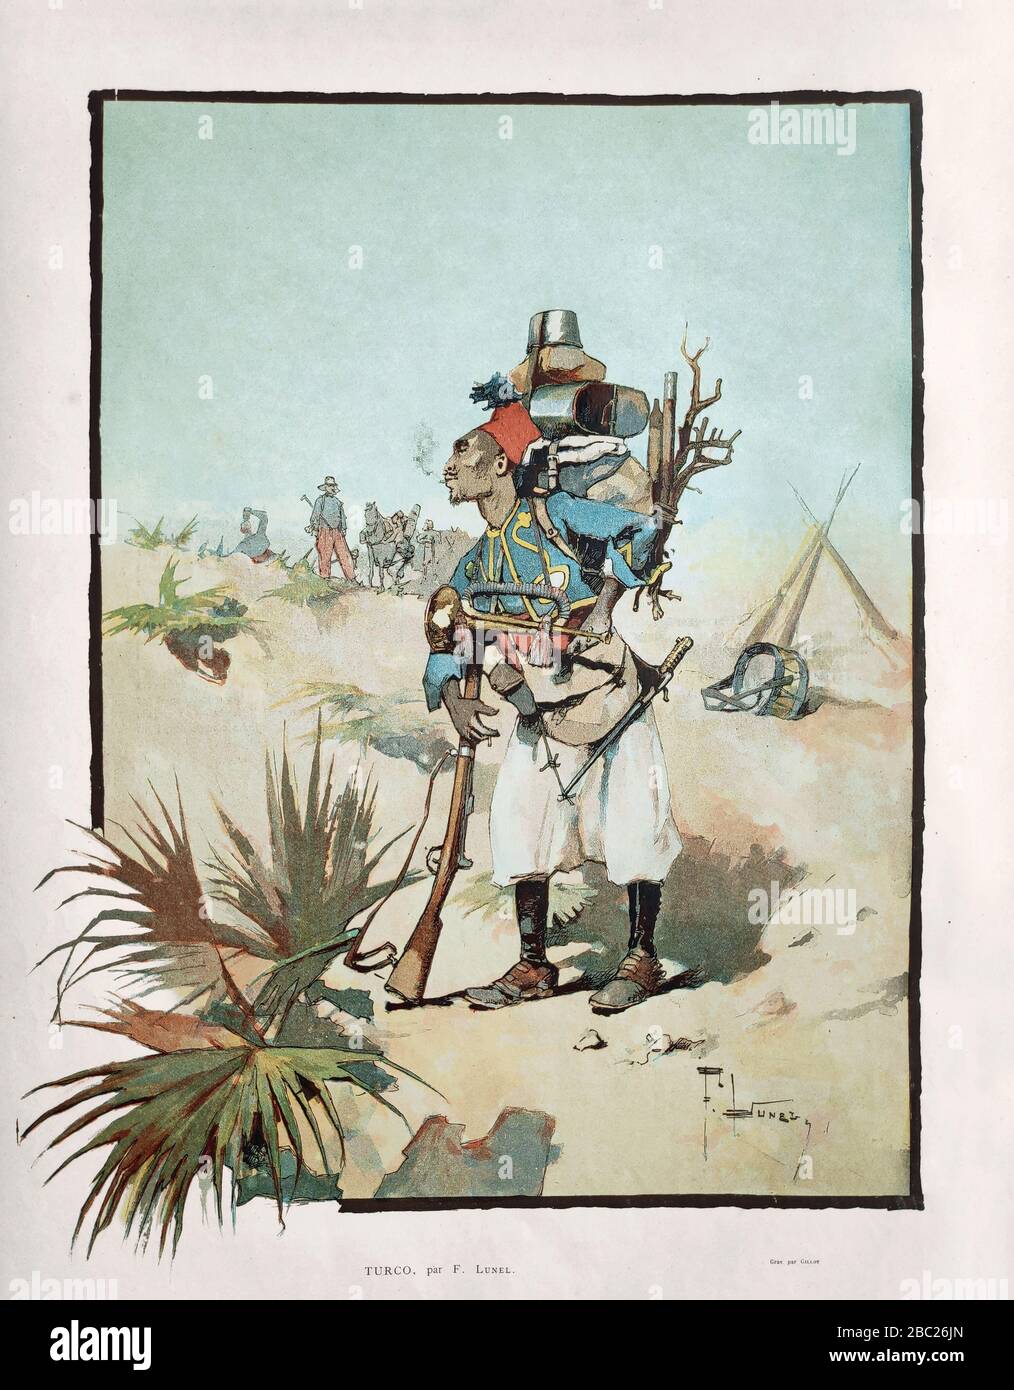 Ilustración sobre un soldado del imperio otomano titulado 'Turco' por F. Lunel y grabado por Gillot publicado en 1884. Foto de stock